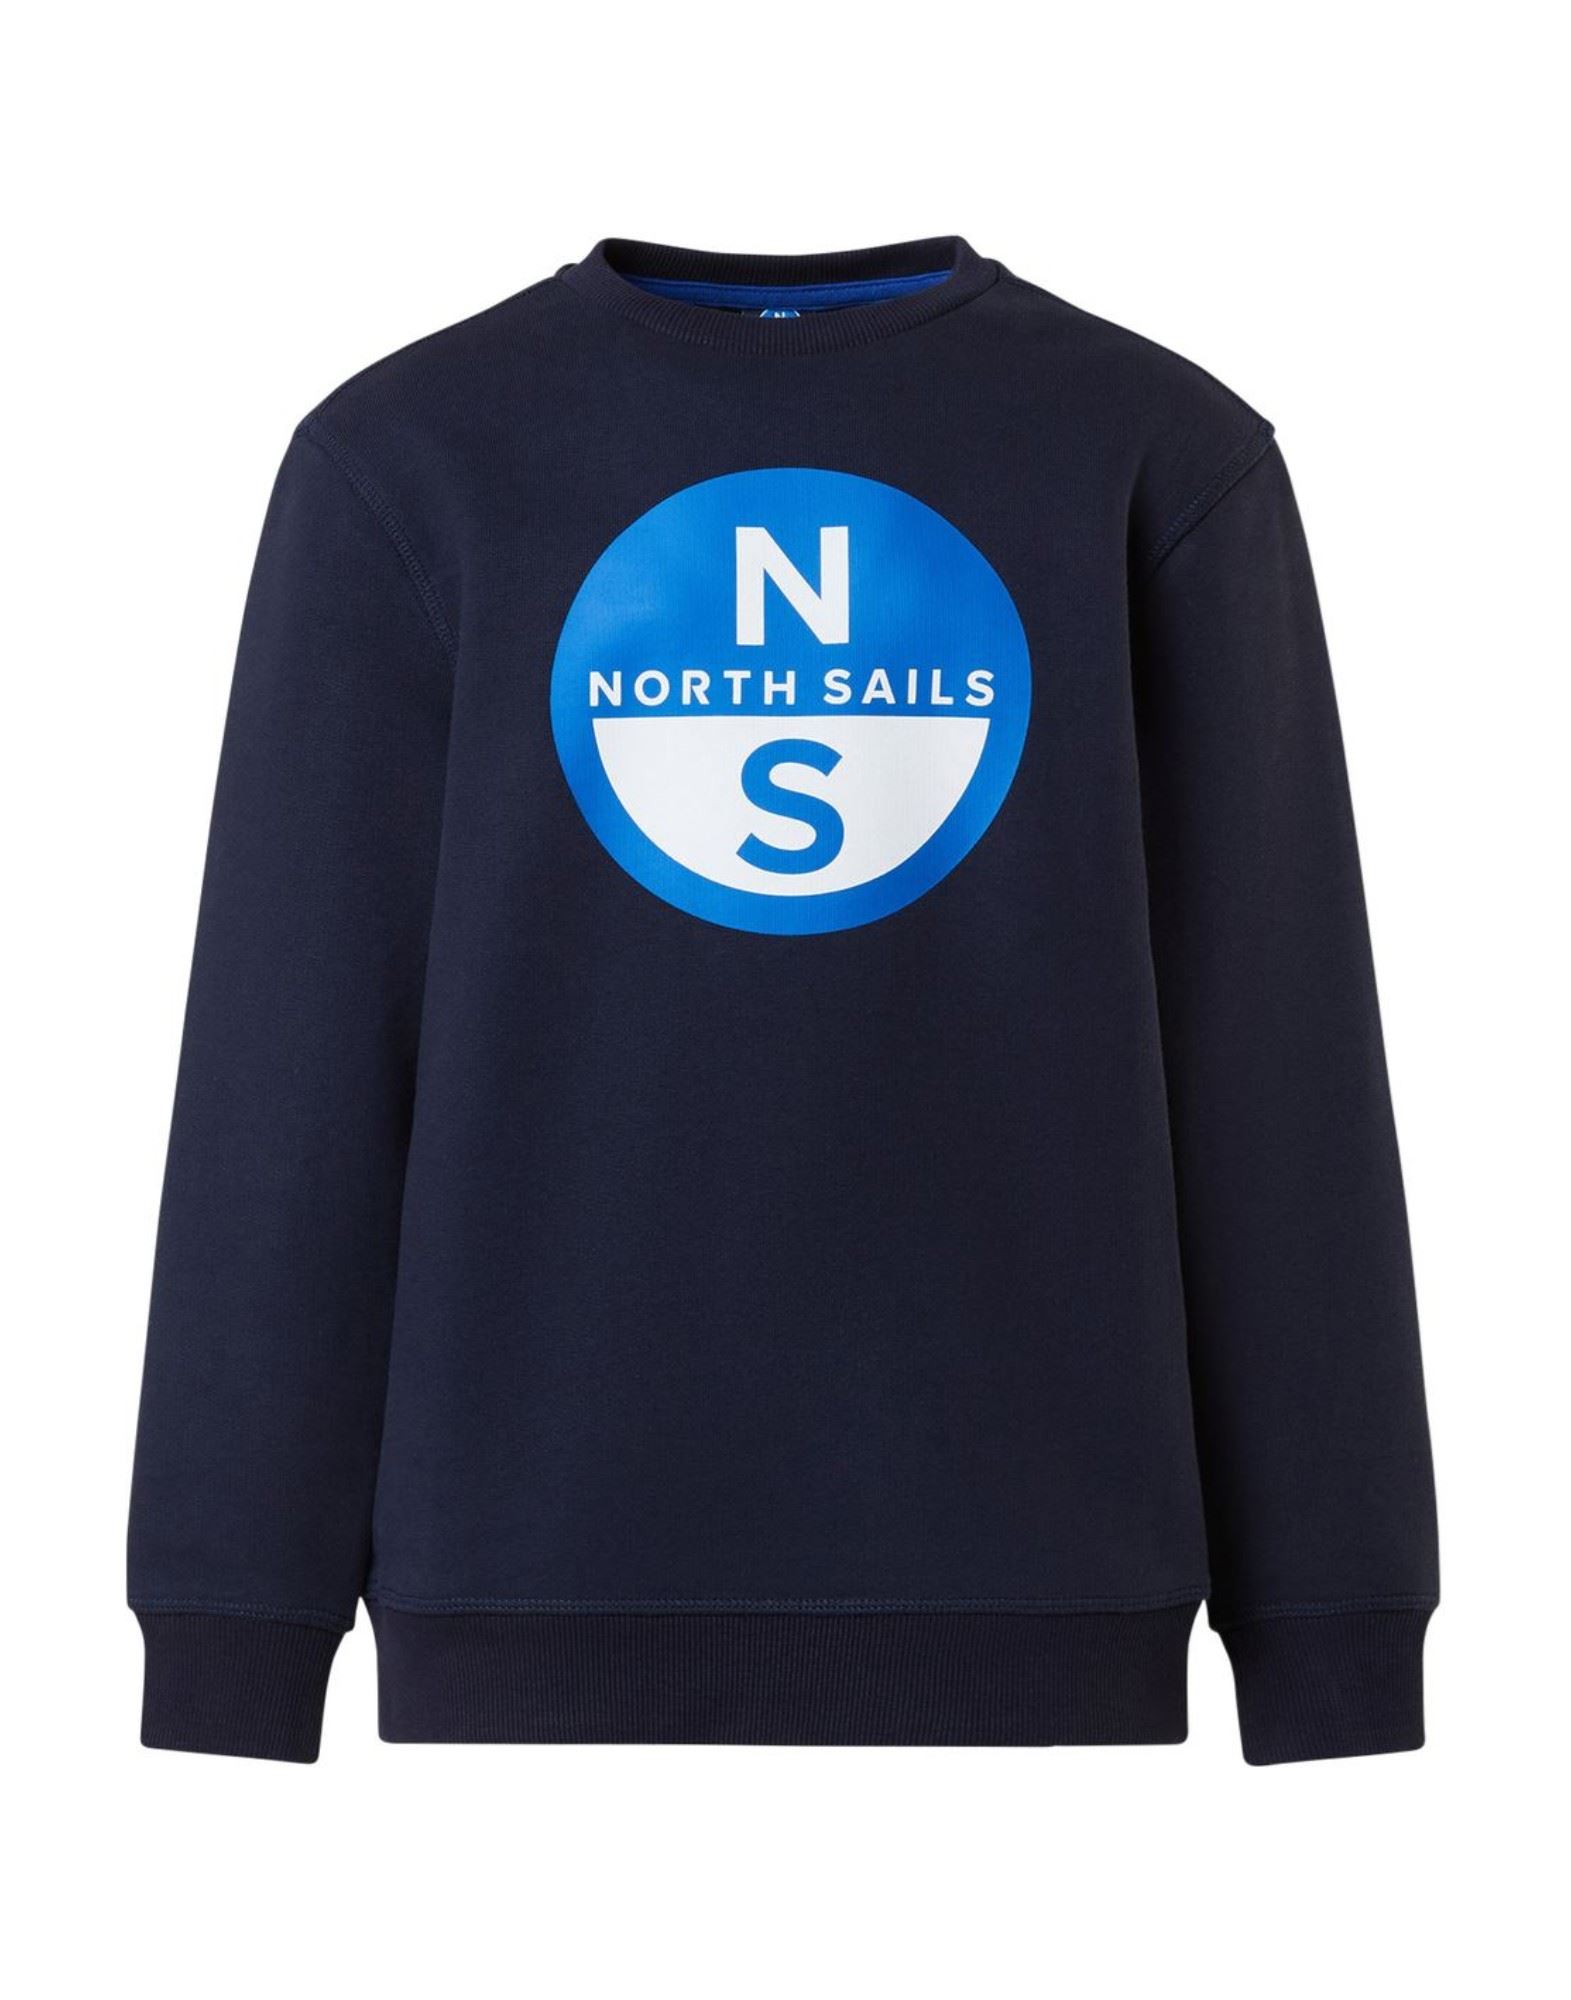 NORTH SAILS Sweatshirt Kinder Blau von NORTH SAILS